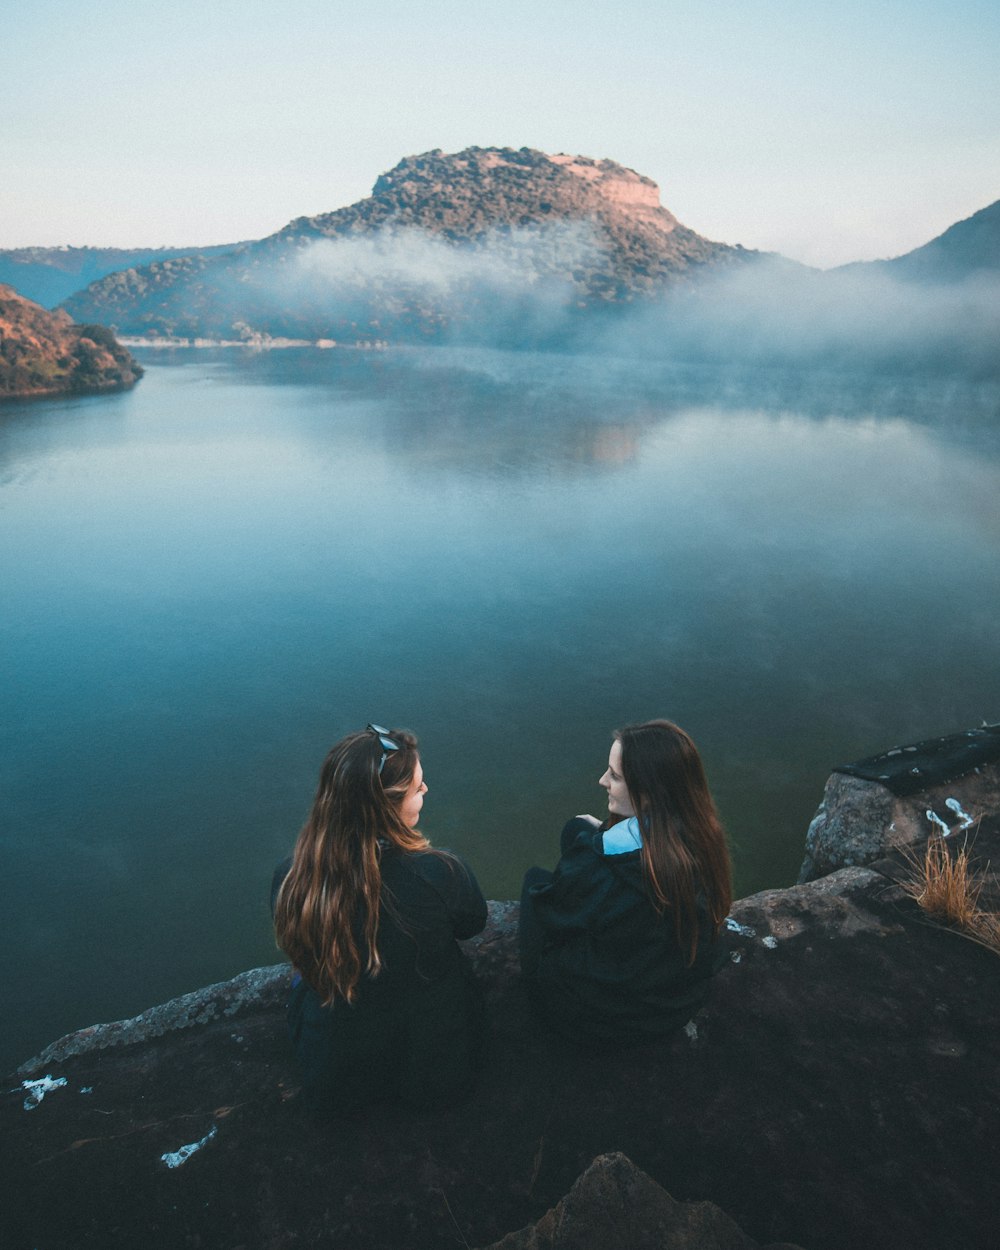 2 women sitting on rock near lake during daytime